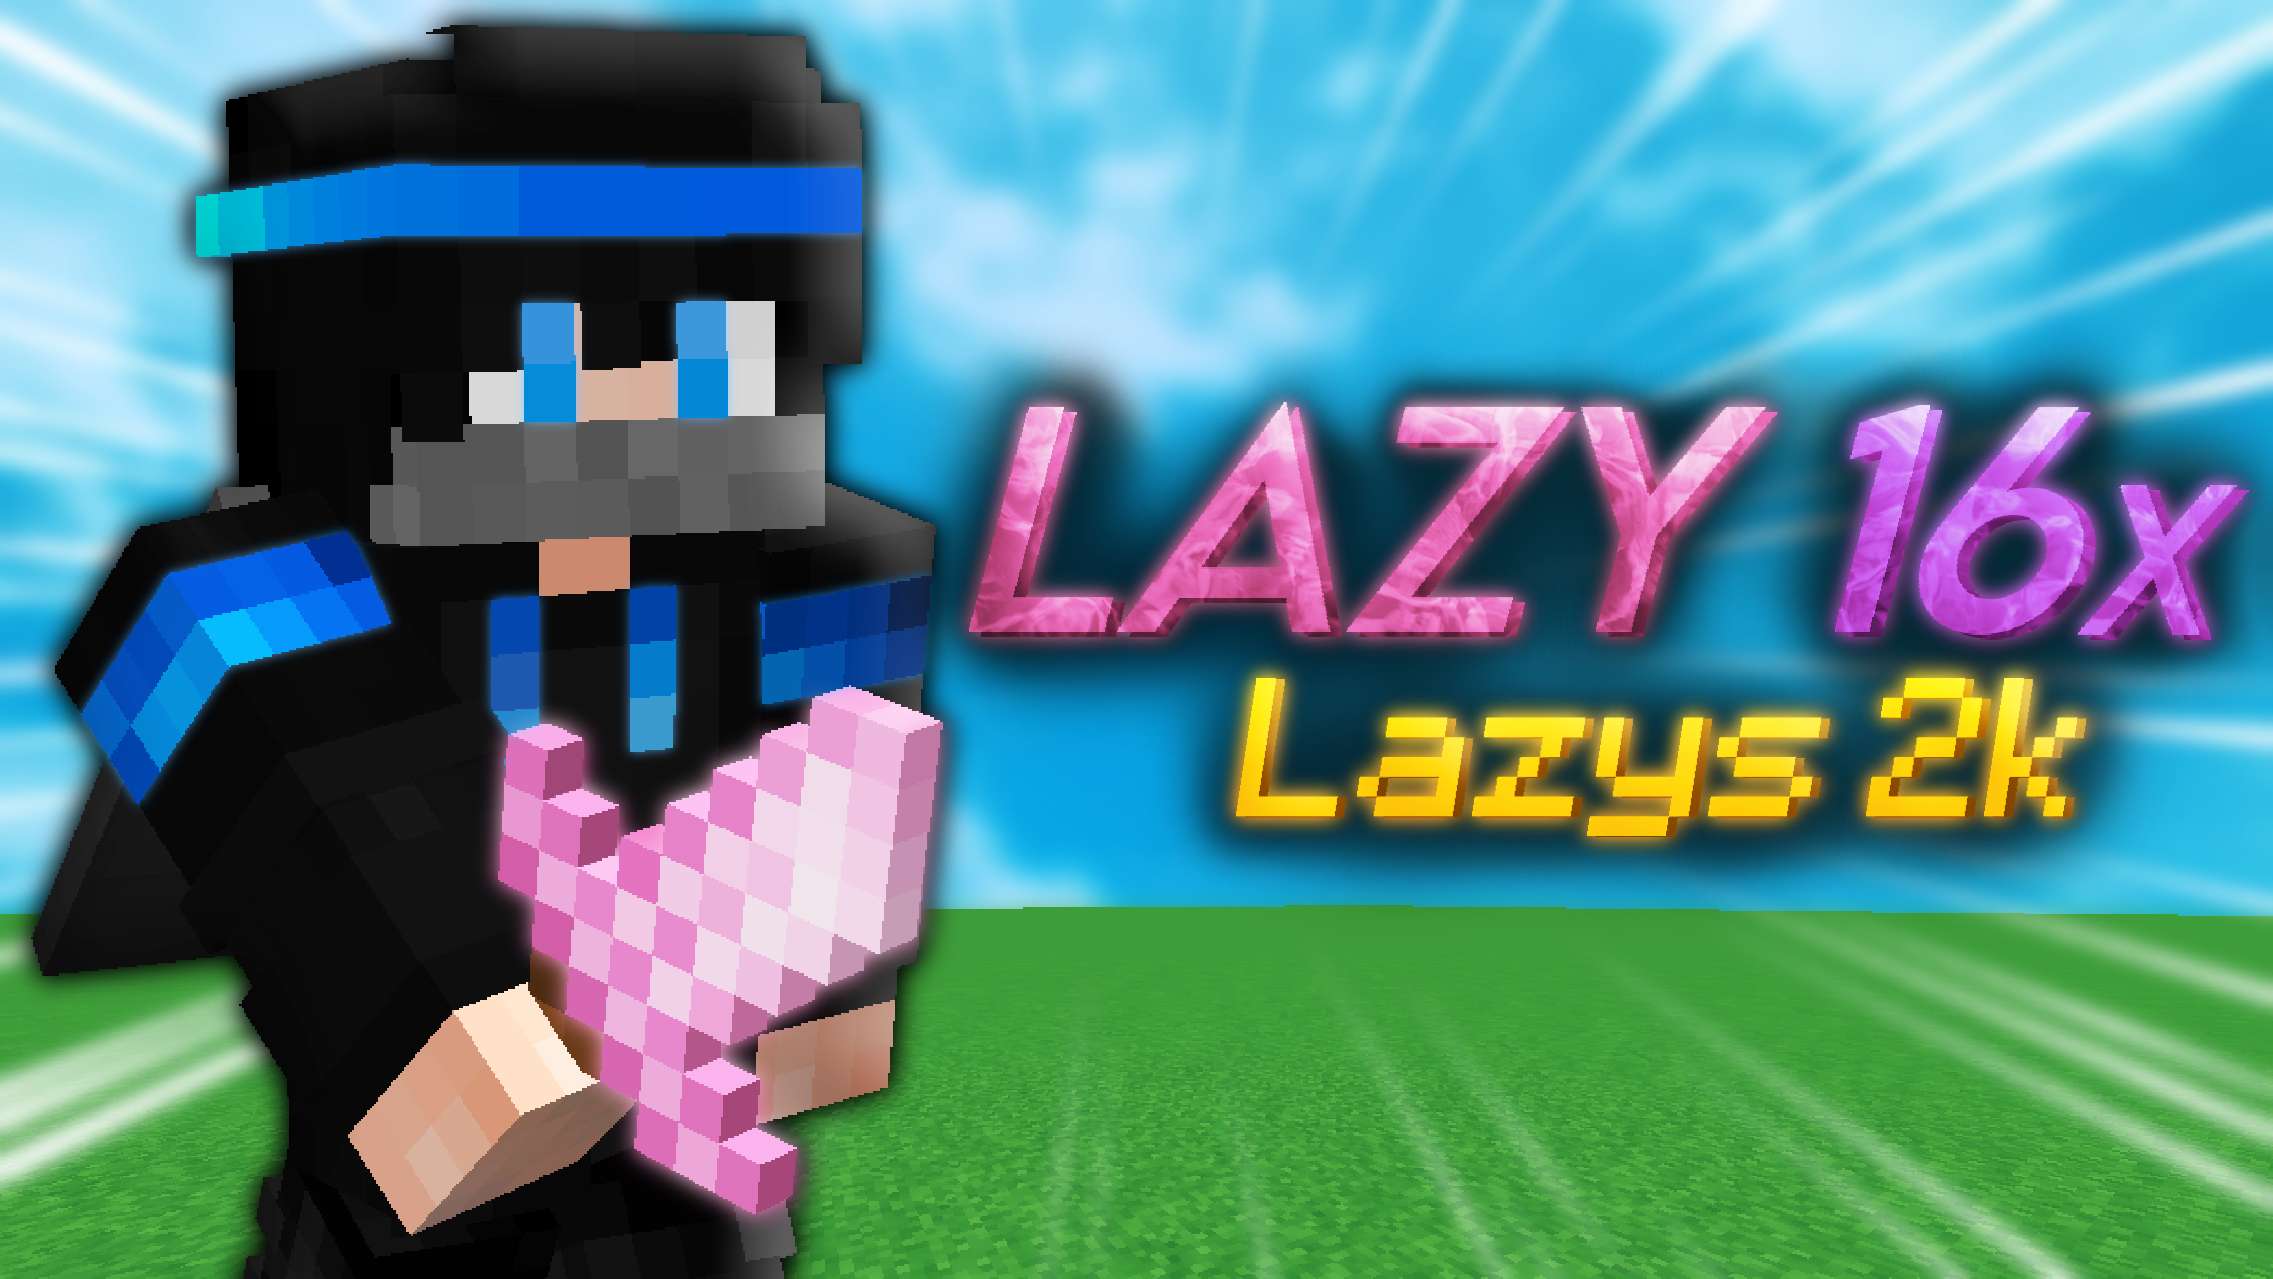 Lazy - (Lazys 2k) 16x by Mqryo on PvPRP